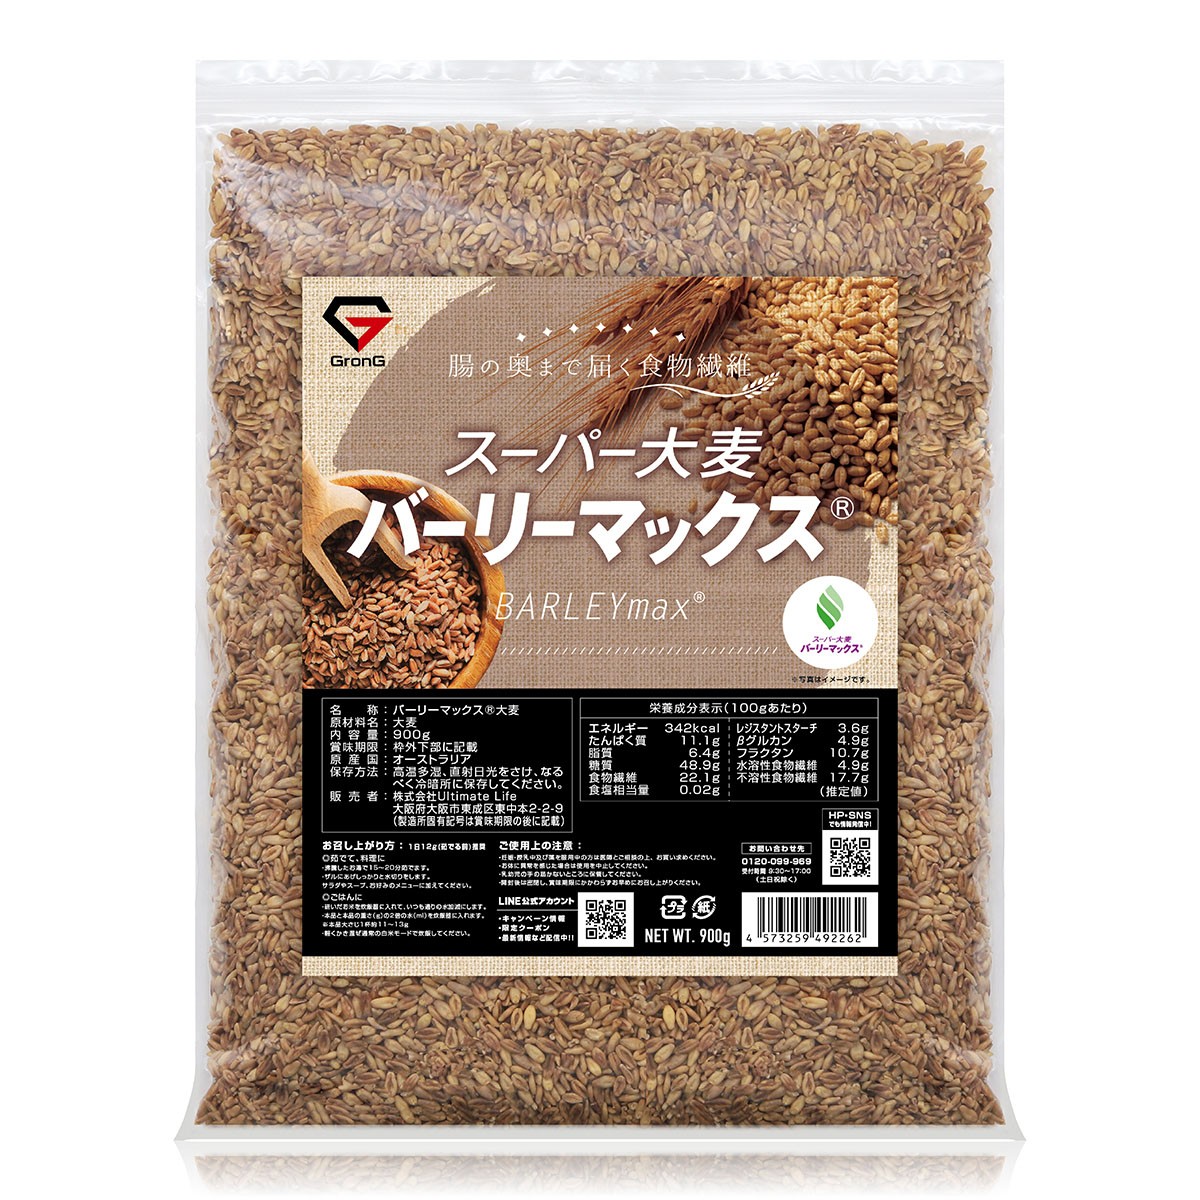 2021激安通販 グロング 大麦 スーパー大麦 バーリーマックス 2000g 食物繊維 押麦 もち麦 大容量 GronG4 980円